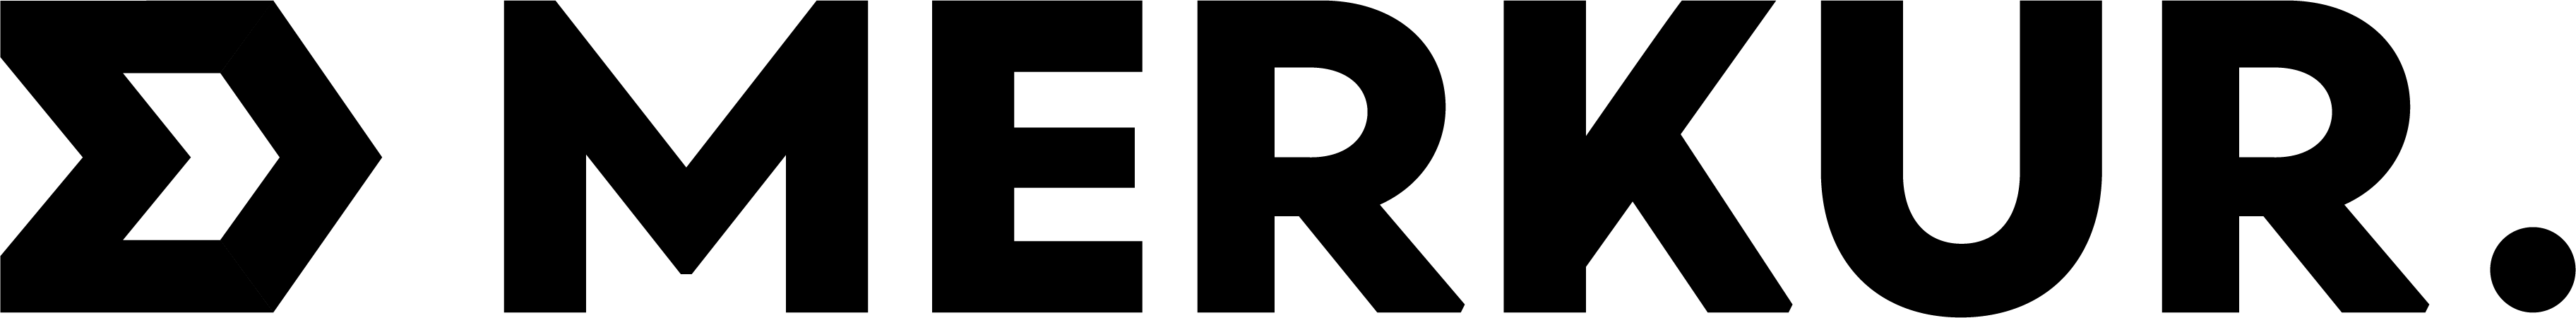 Merkur - Logo